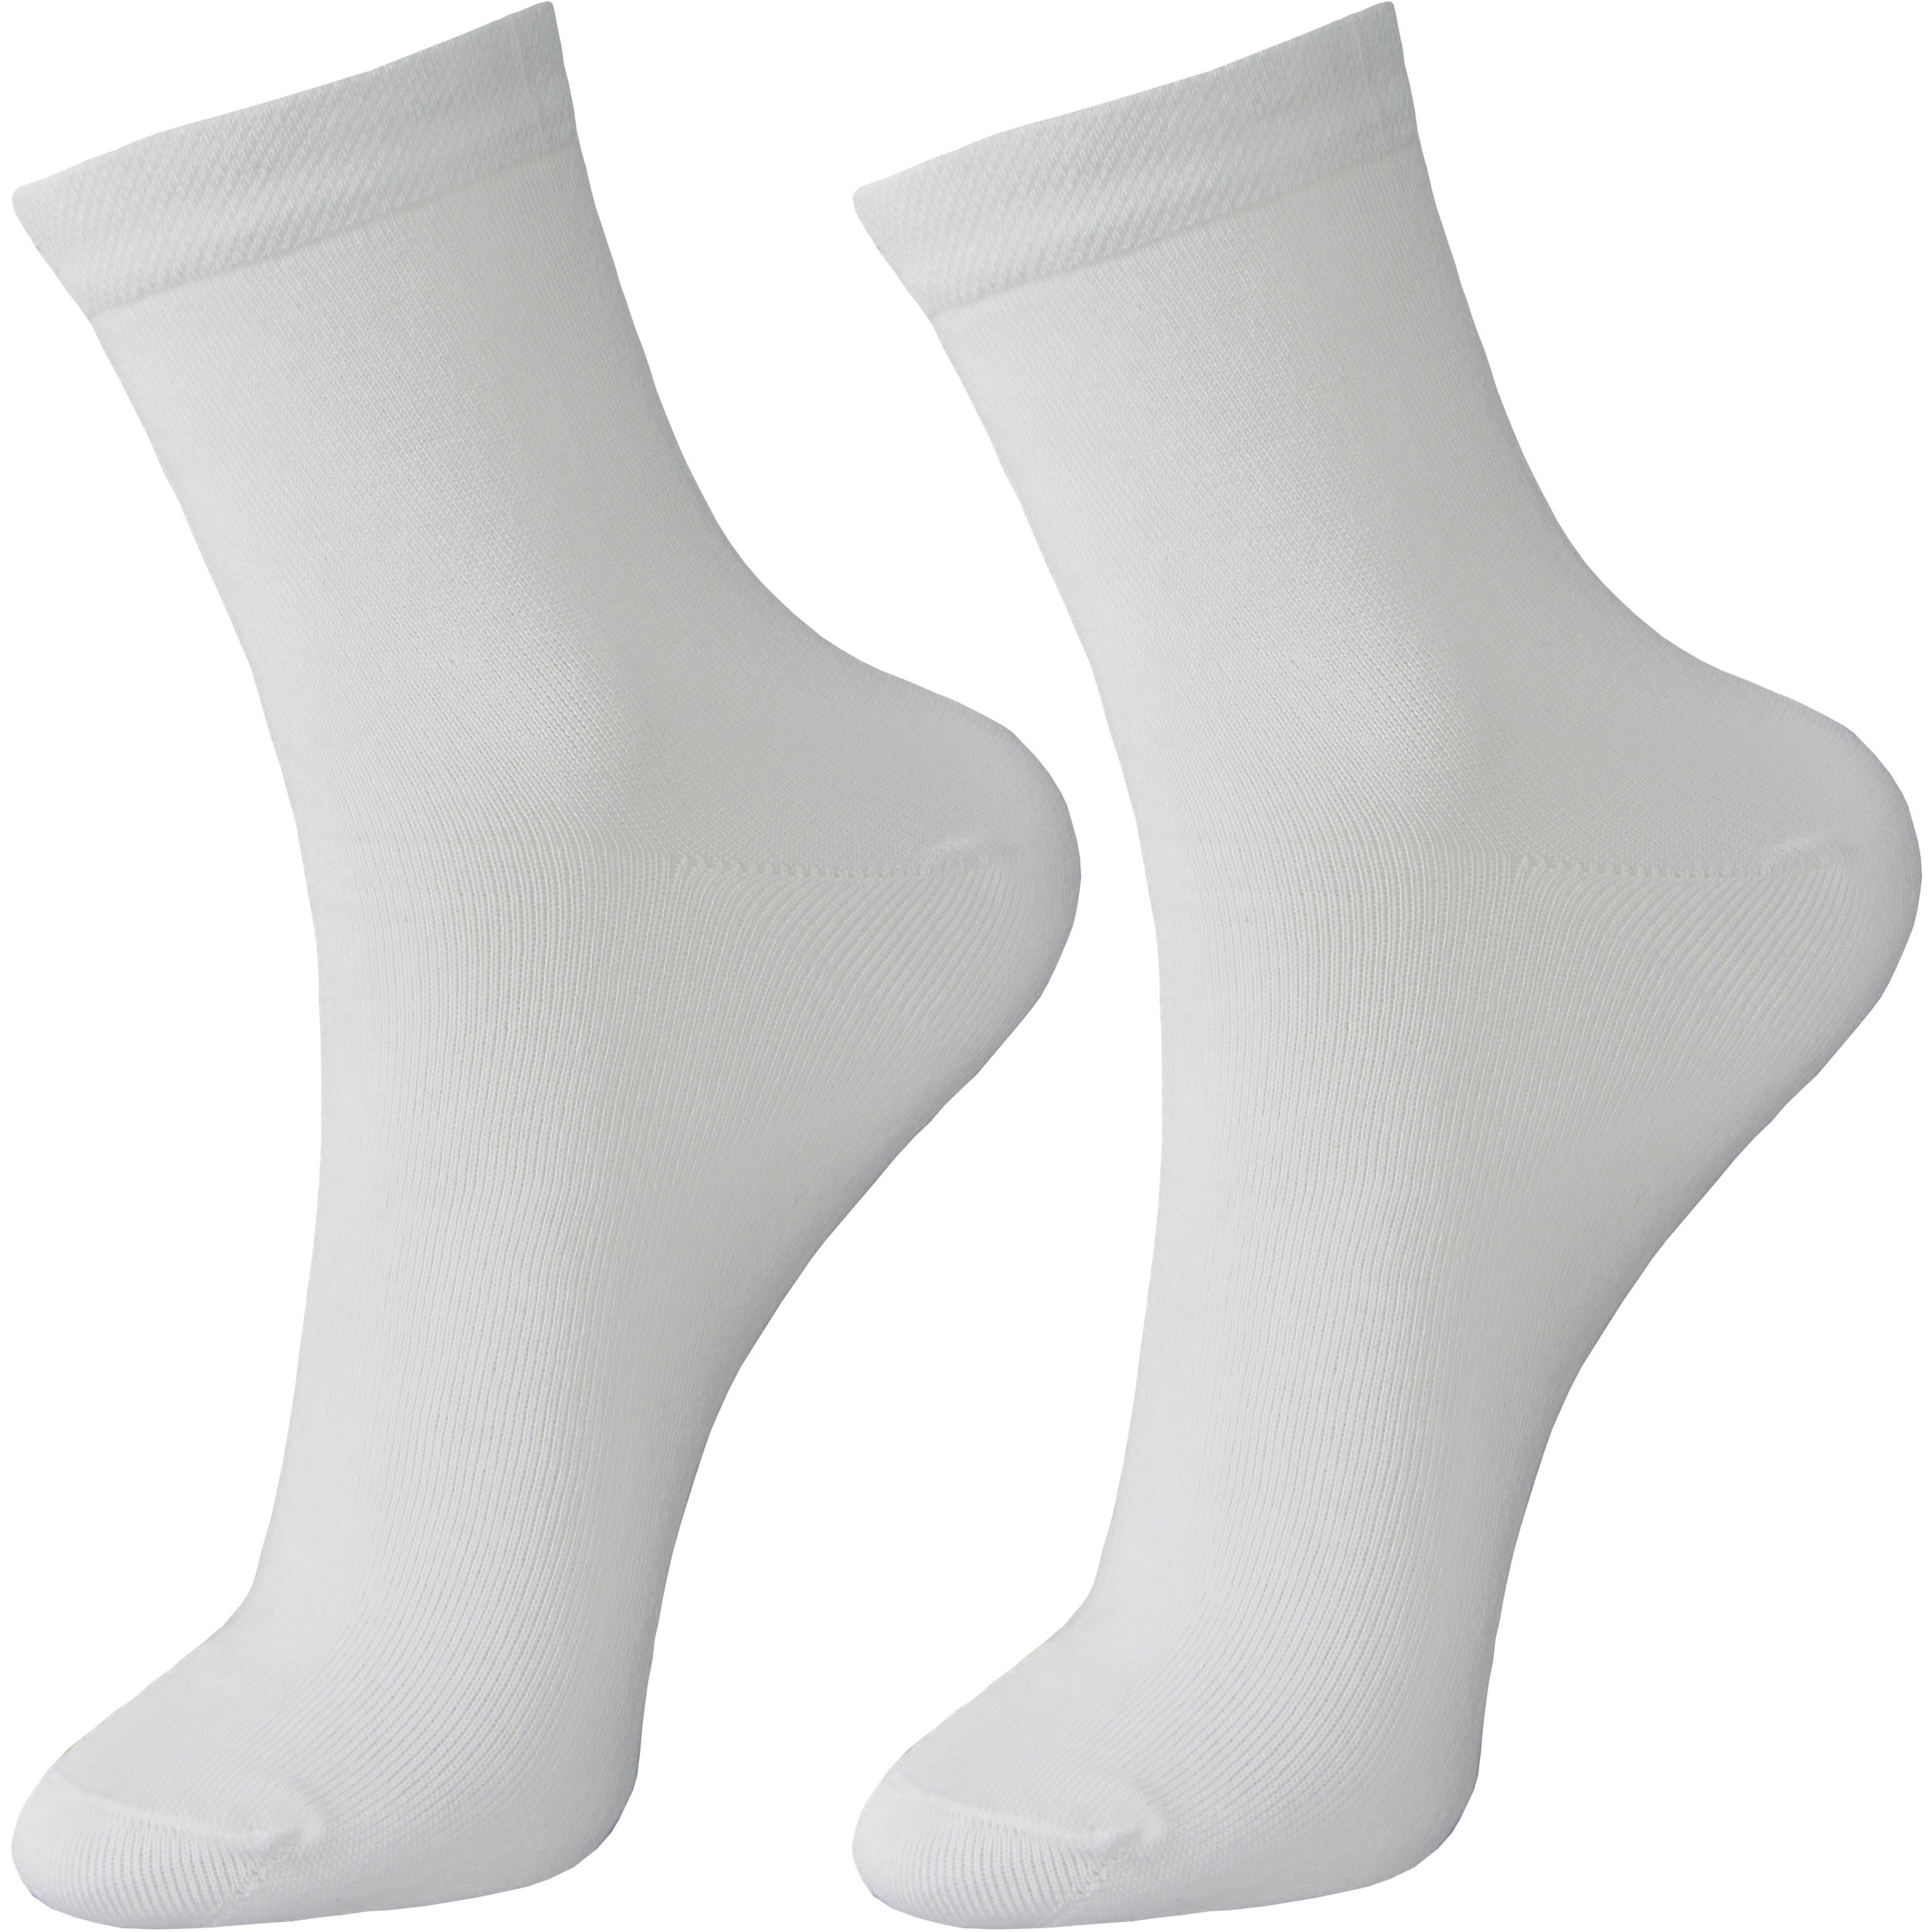 جوراب ساق کوتاه مردانه ادیب مدل کلاسیک کد 02010 رنگ سفید بسته 2 عددی 